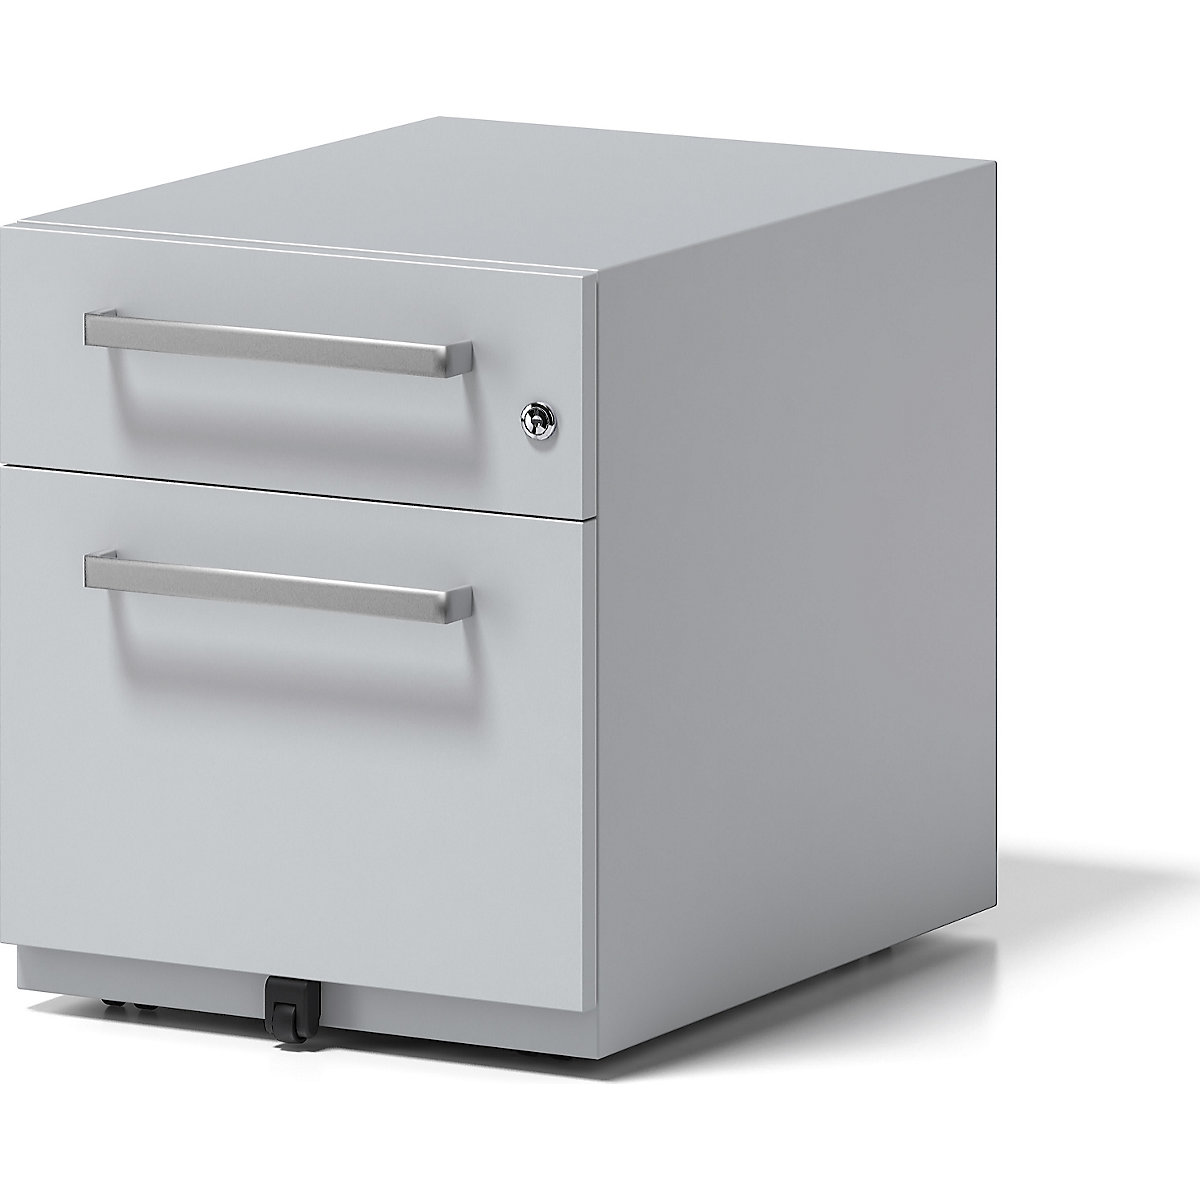 Buck rodante Note™ con 1 archivador colgante y 1 cajón universal – BISLEY, H x A x P 495 x 420 x 565 mm, con asa, gris luminoso